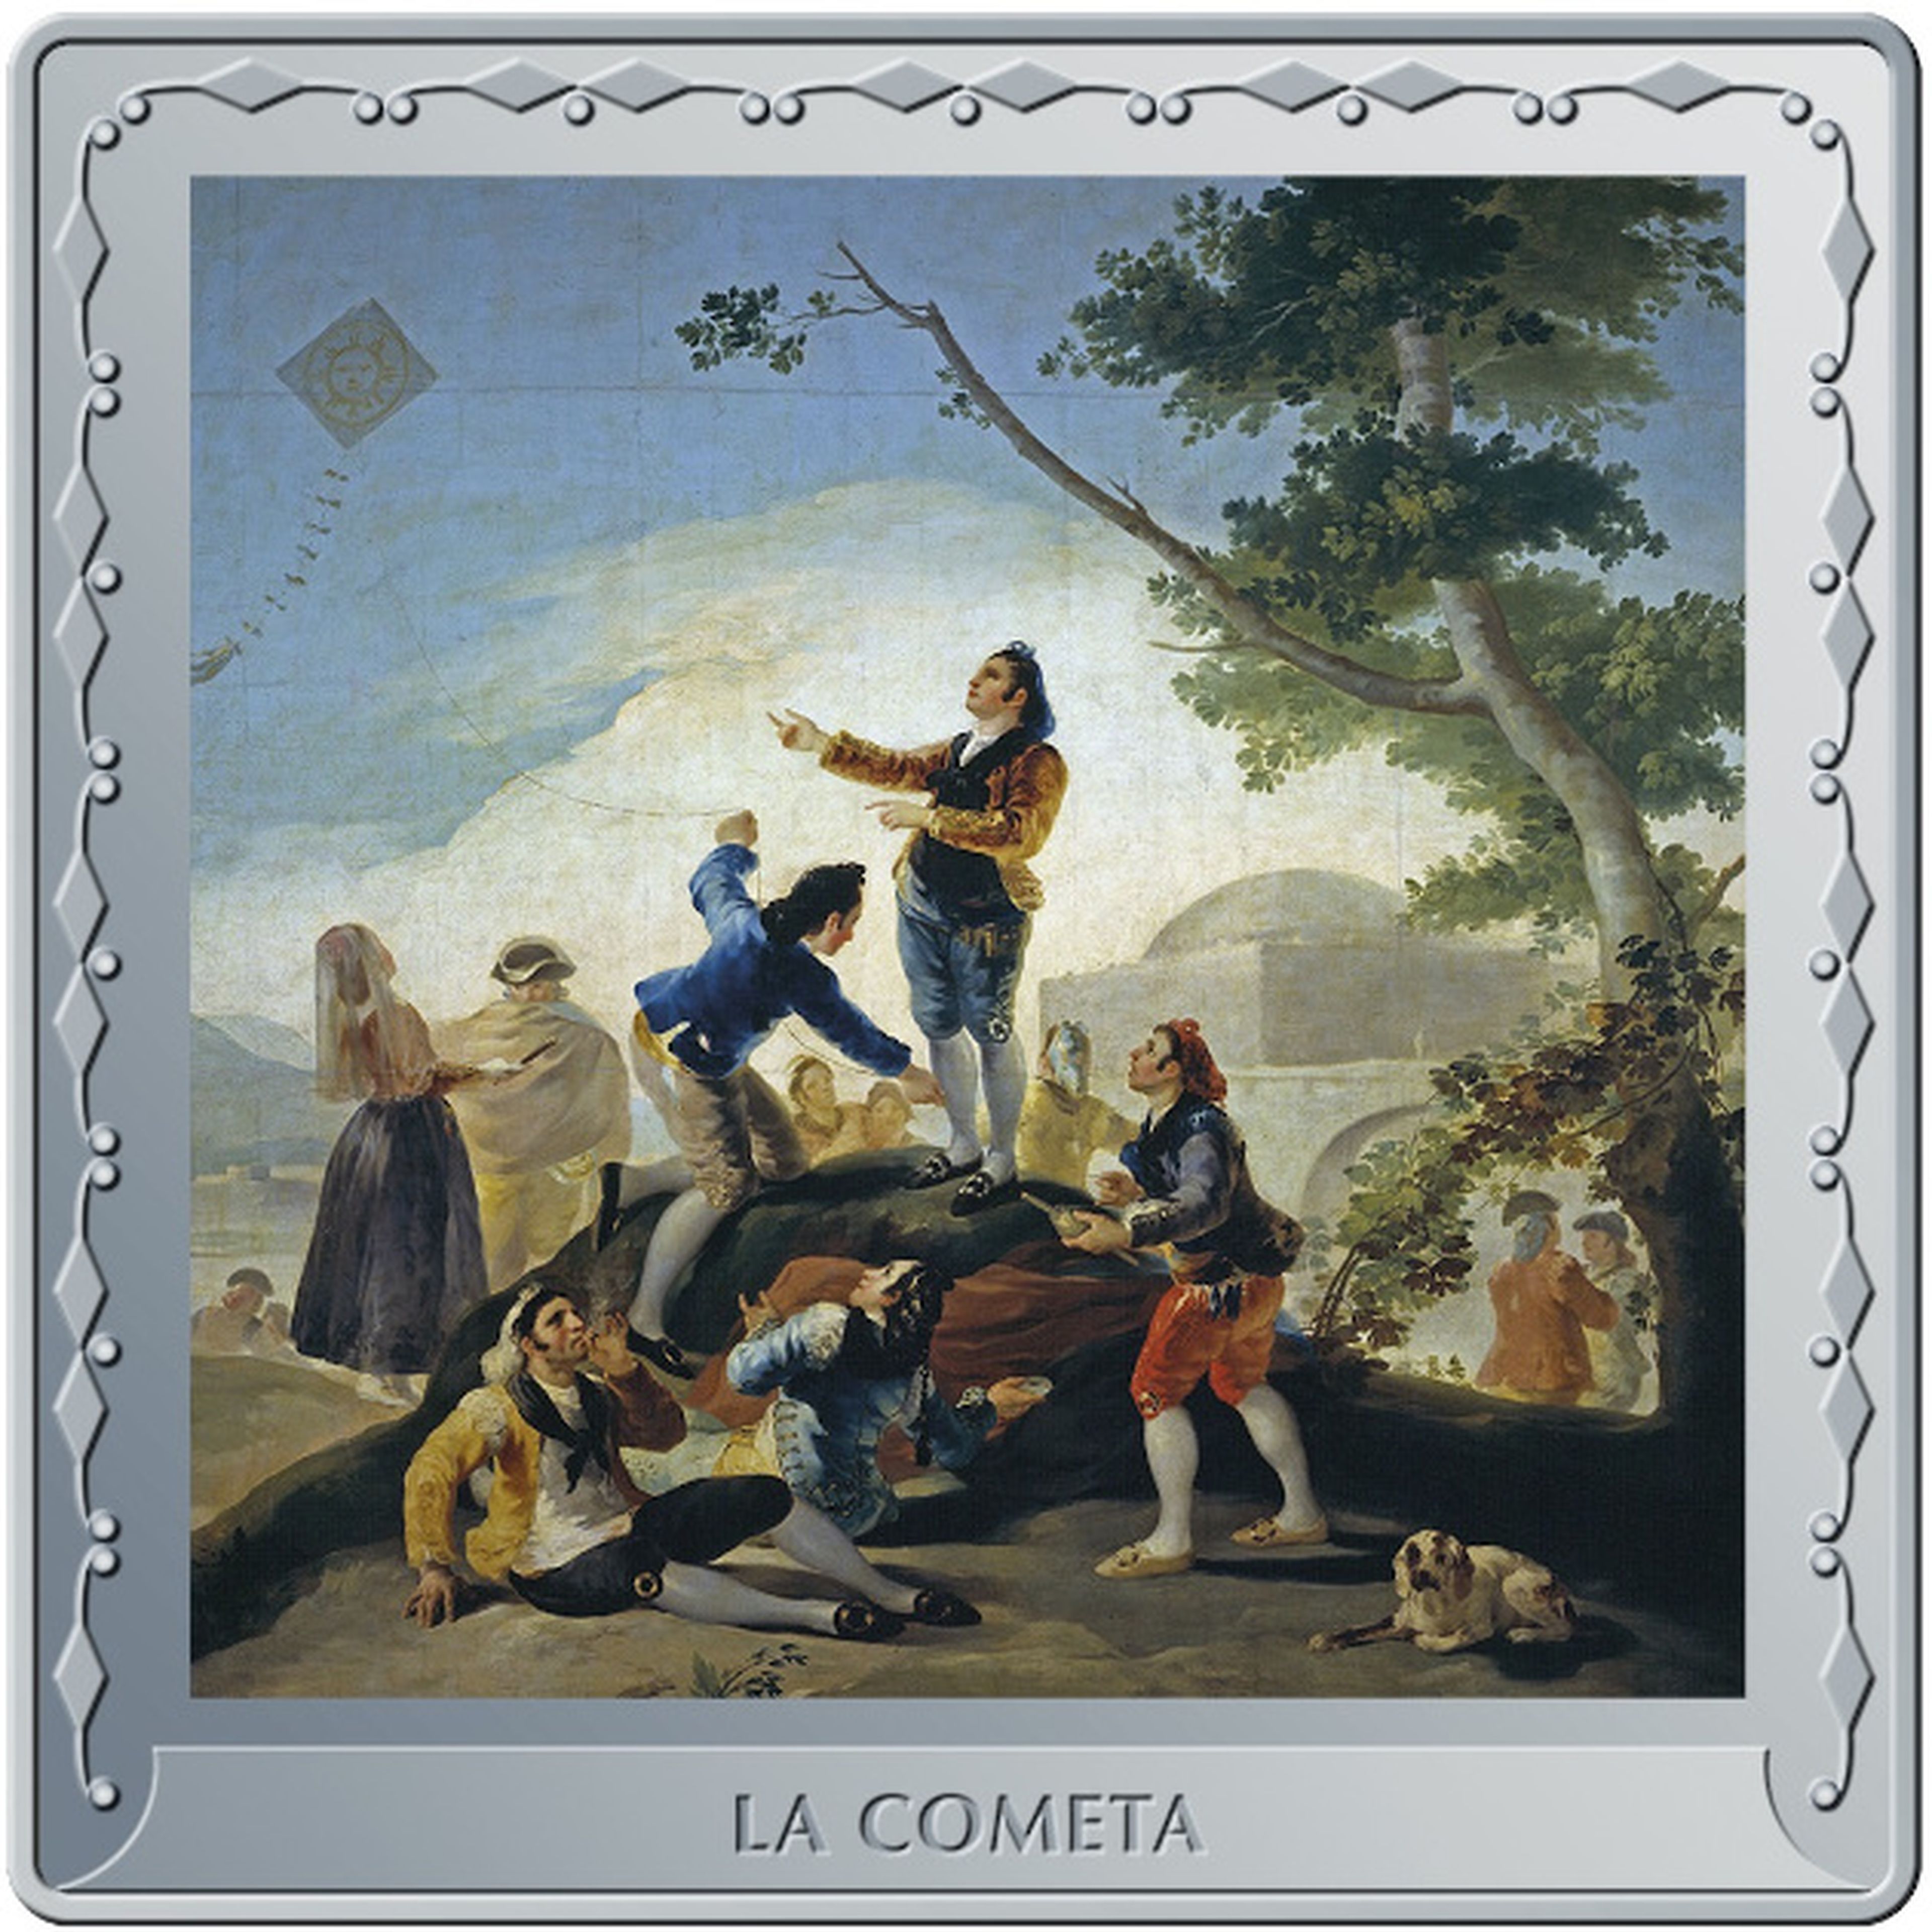 Moneda por el aniversario de Goya